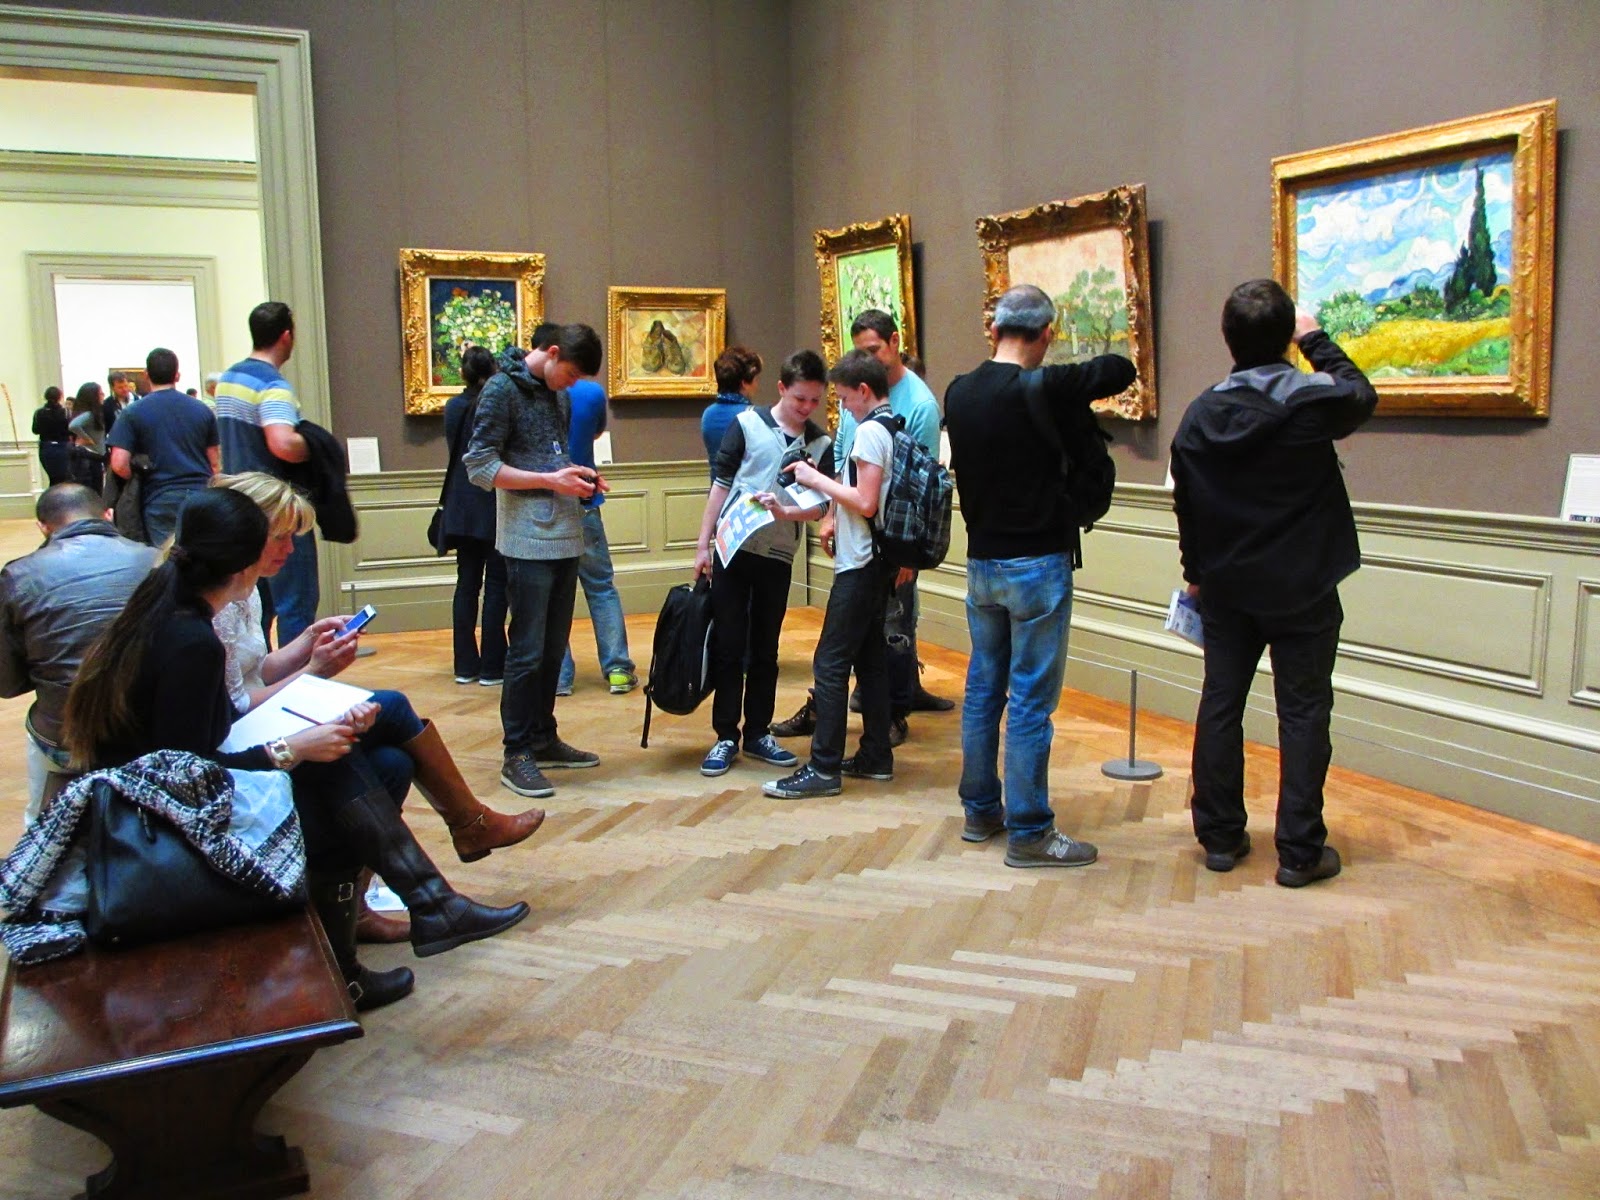 Os melhores museus nos EUA para ver as obras de VAN GOGH | Na rota do Van Gogh nos EUA